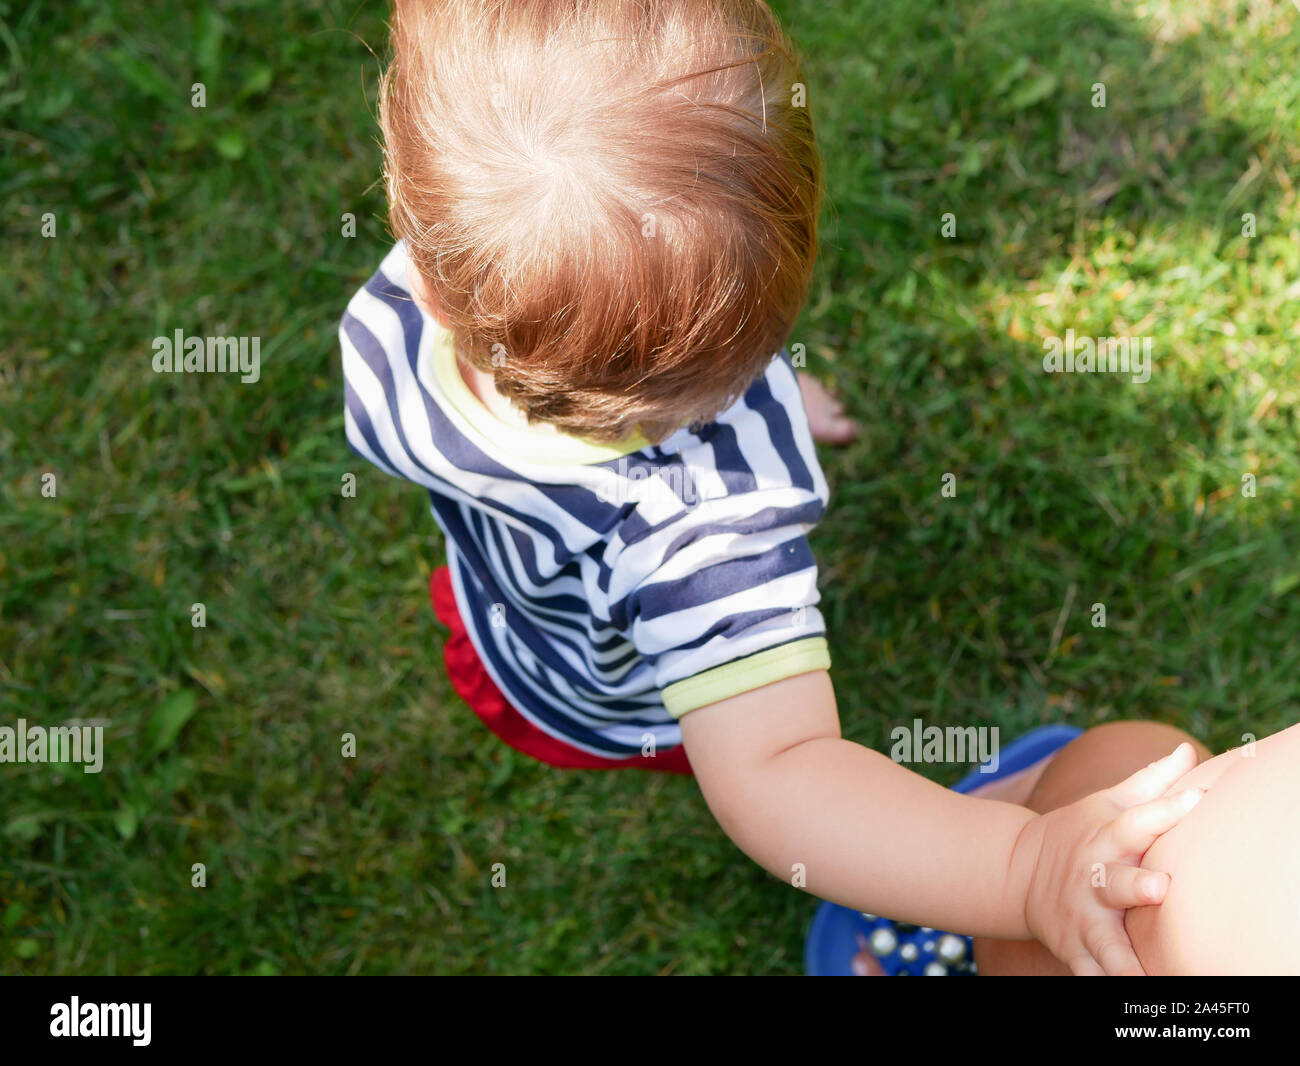 Kind hält Mom's Hand. Blick von oben. grünes Gras Hintergrund. Stockfoto